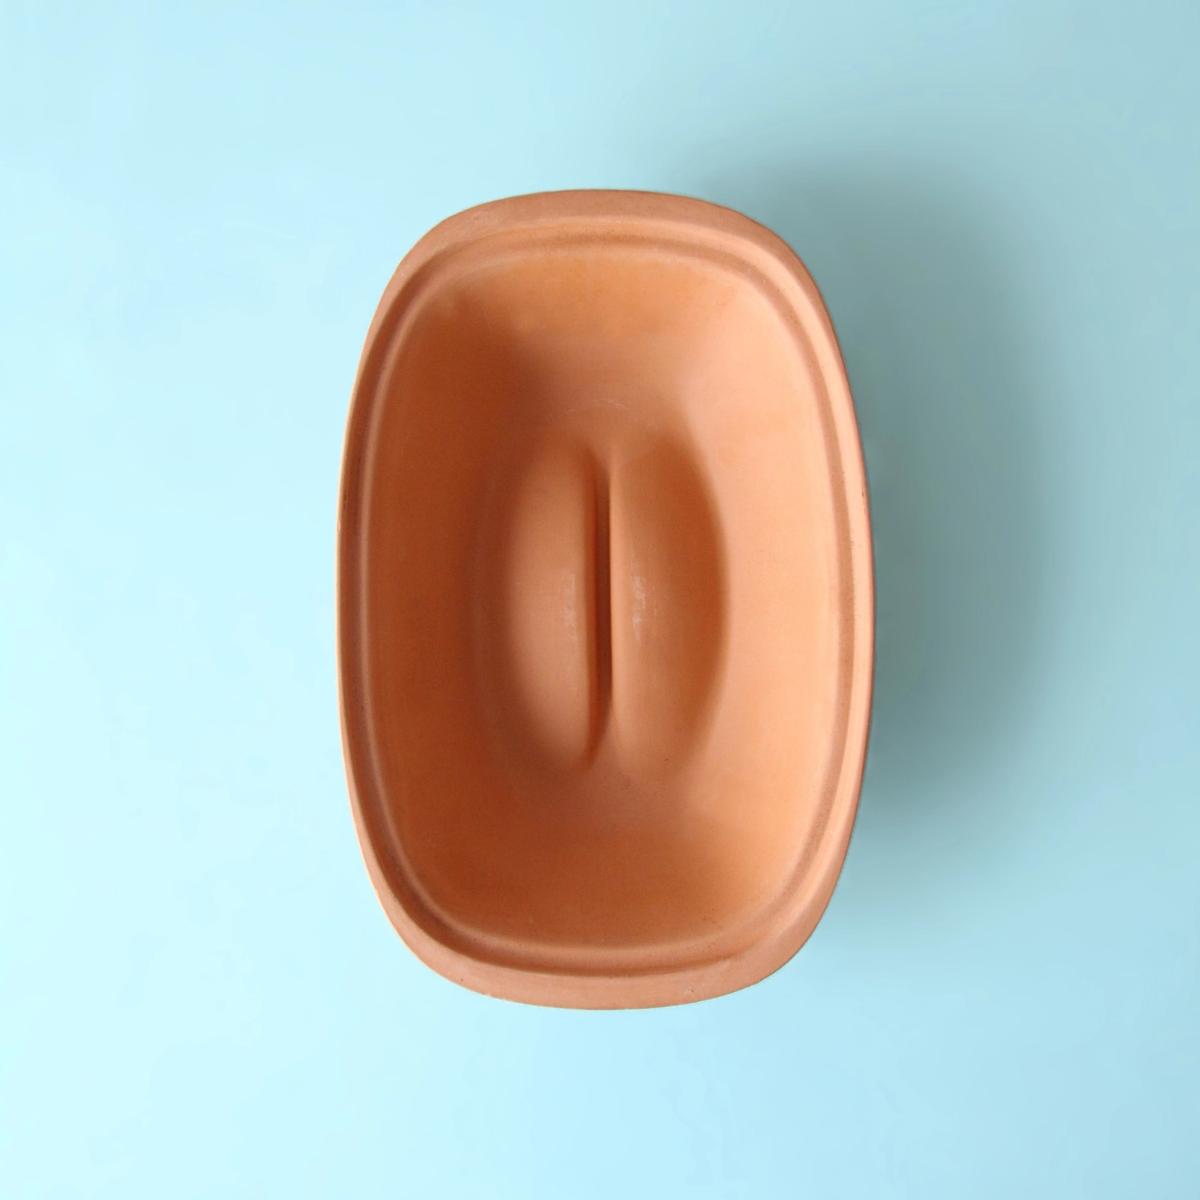 A model of a vulva